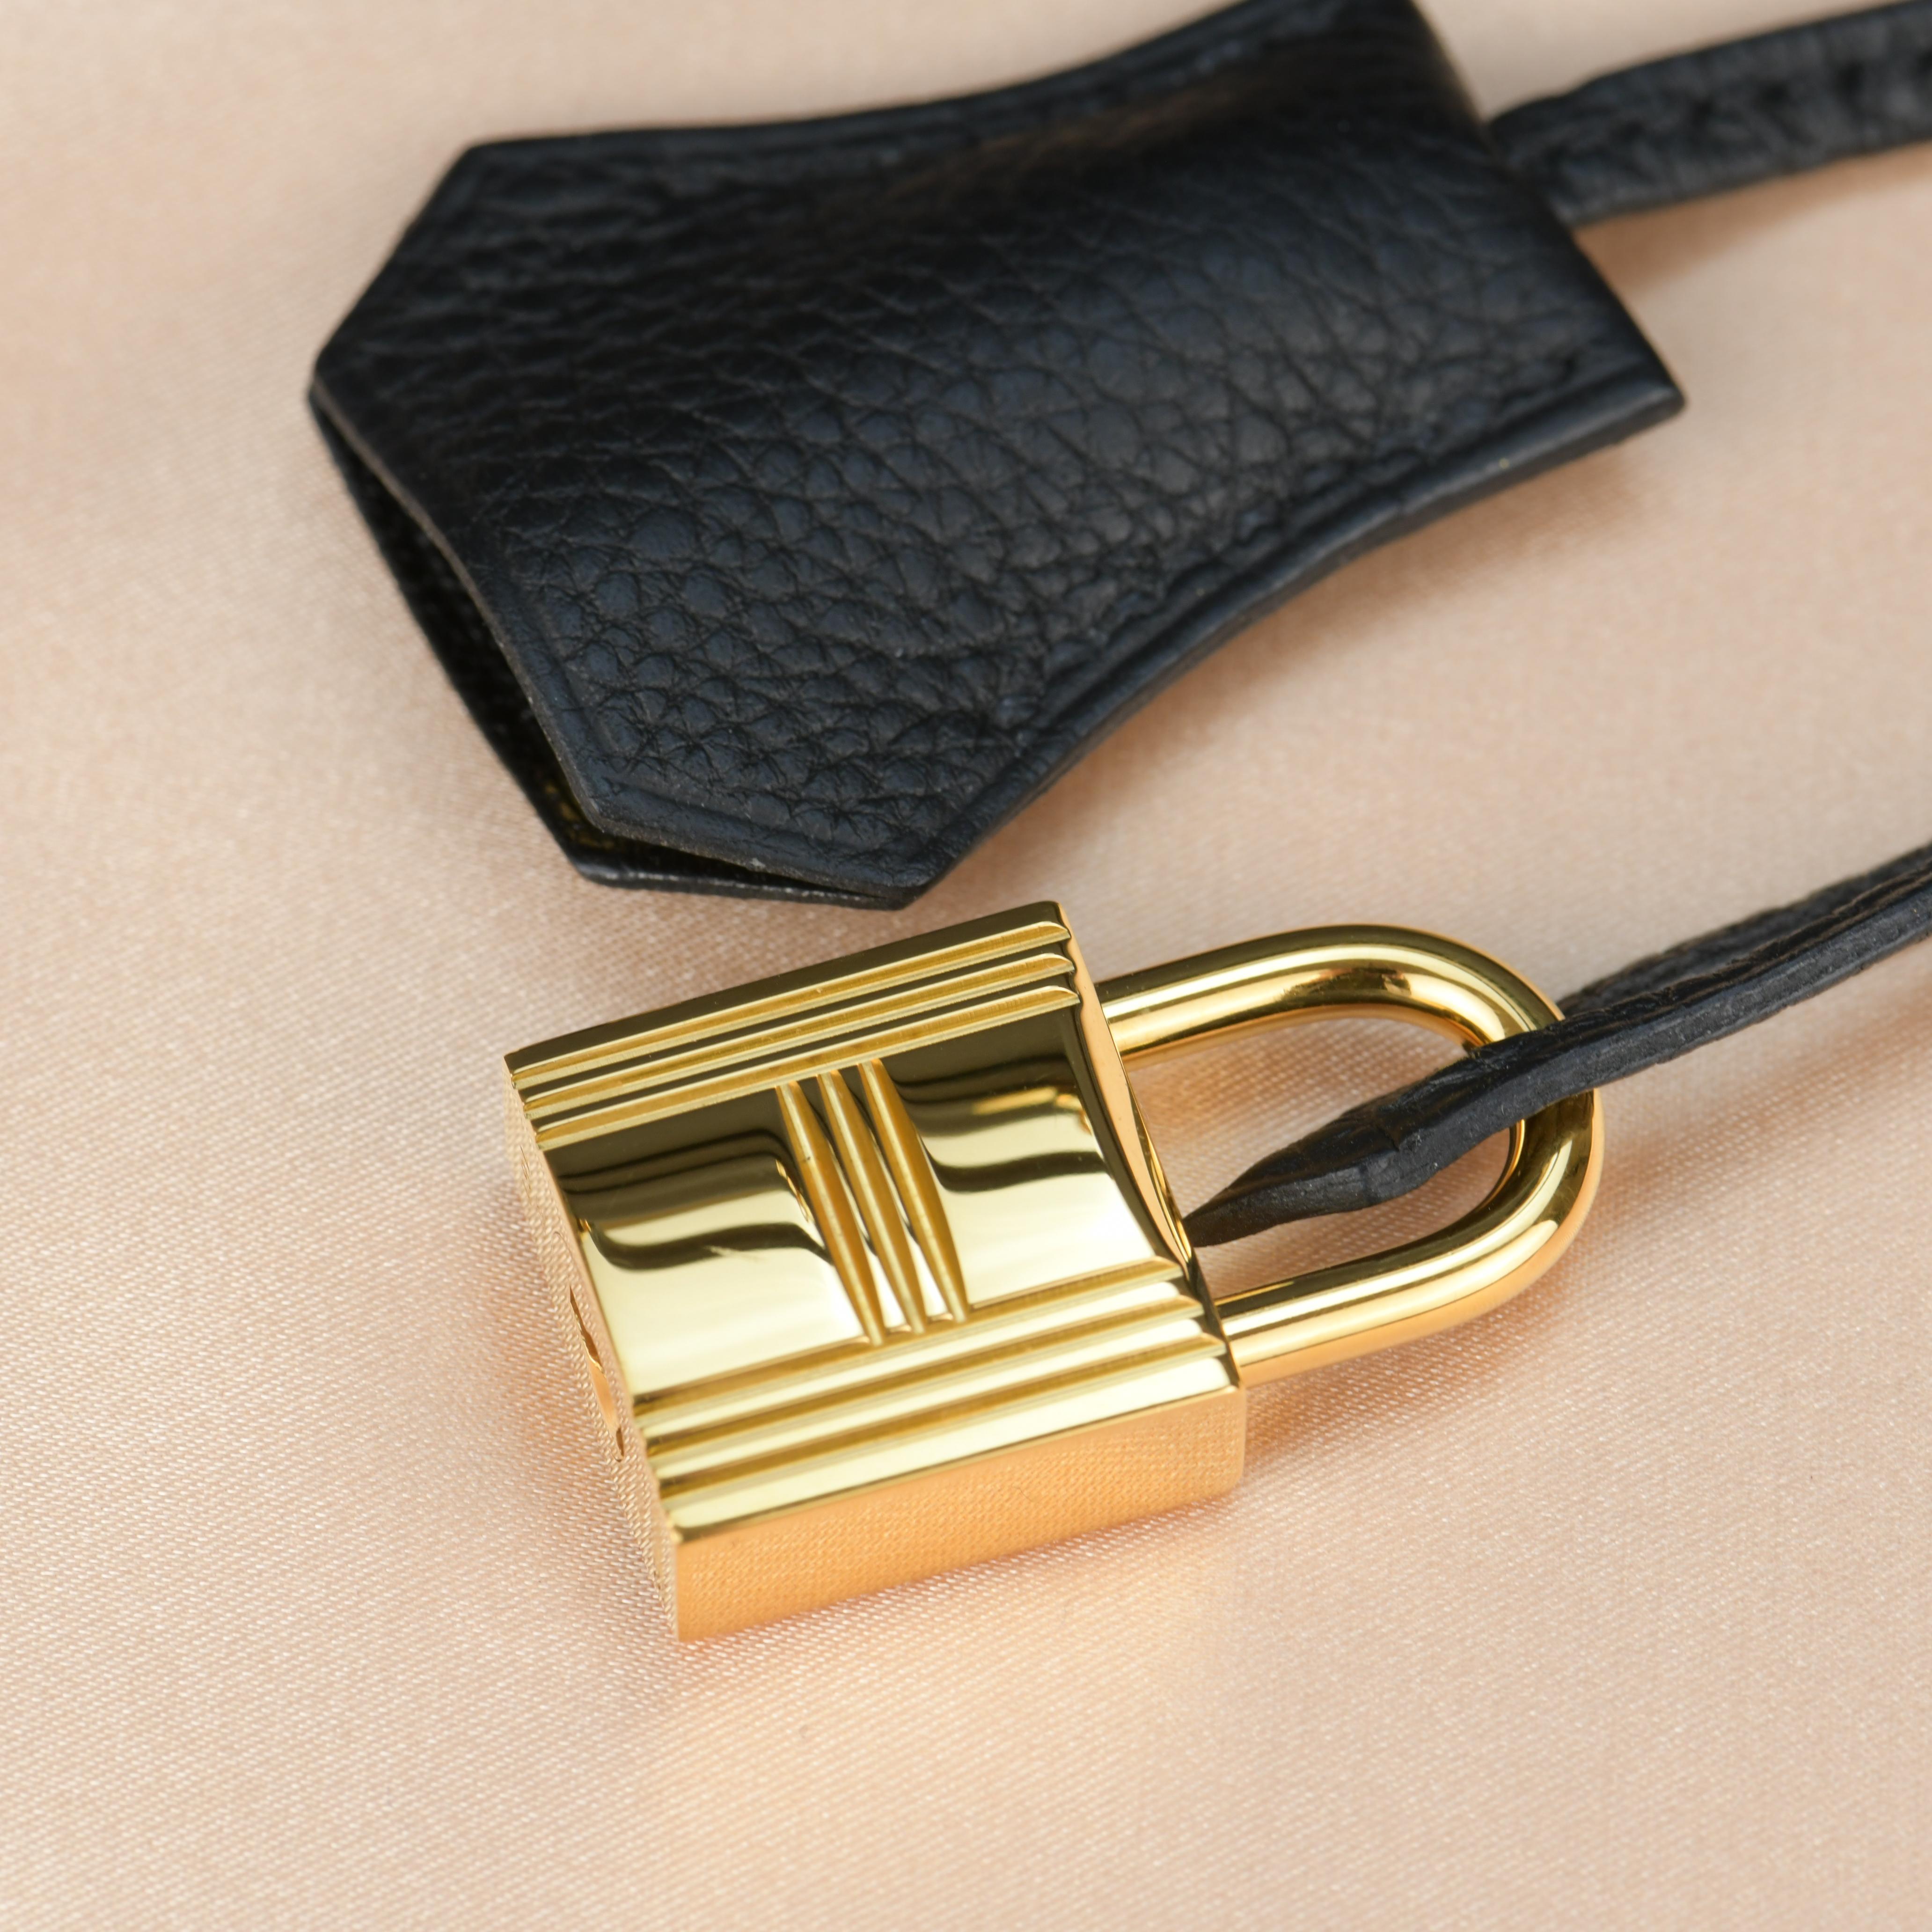 Hermes Black Togo Leather Gold Hardware Kelly 25 Bag 1